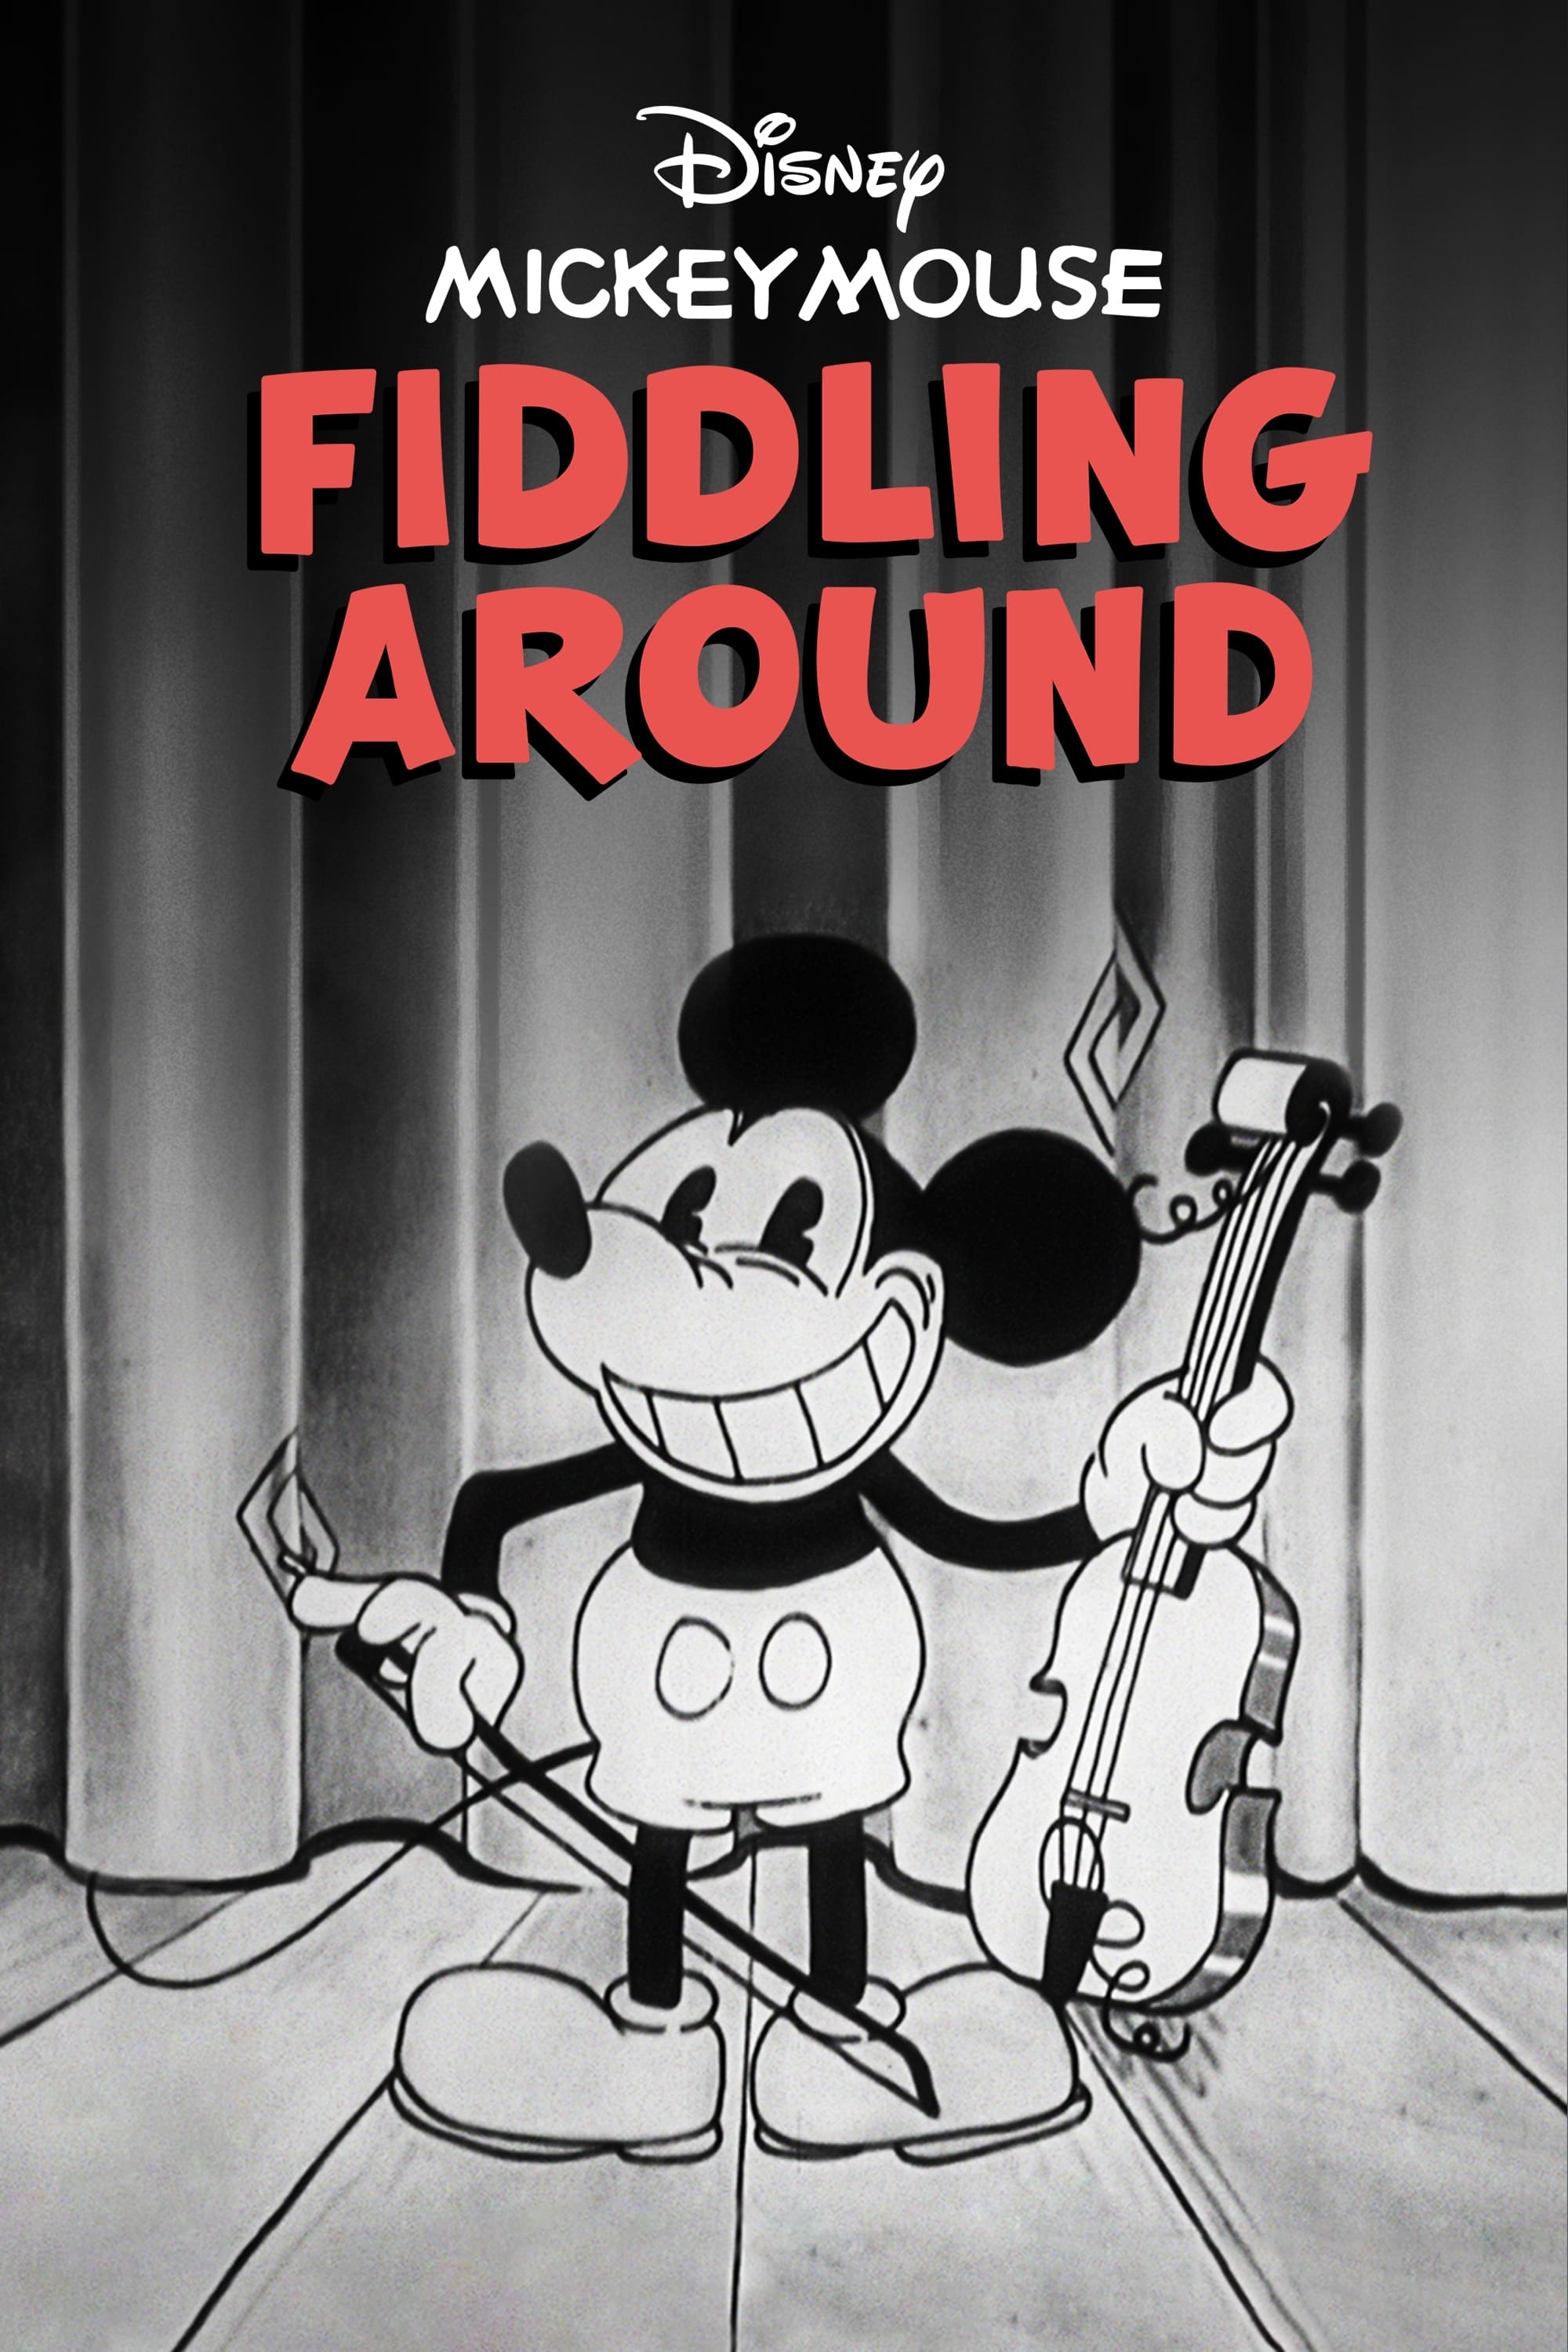 Fiddling Around (1930)